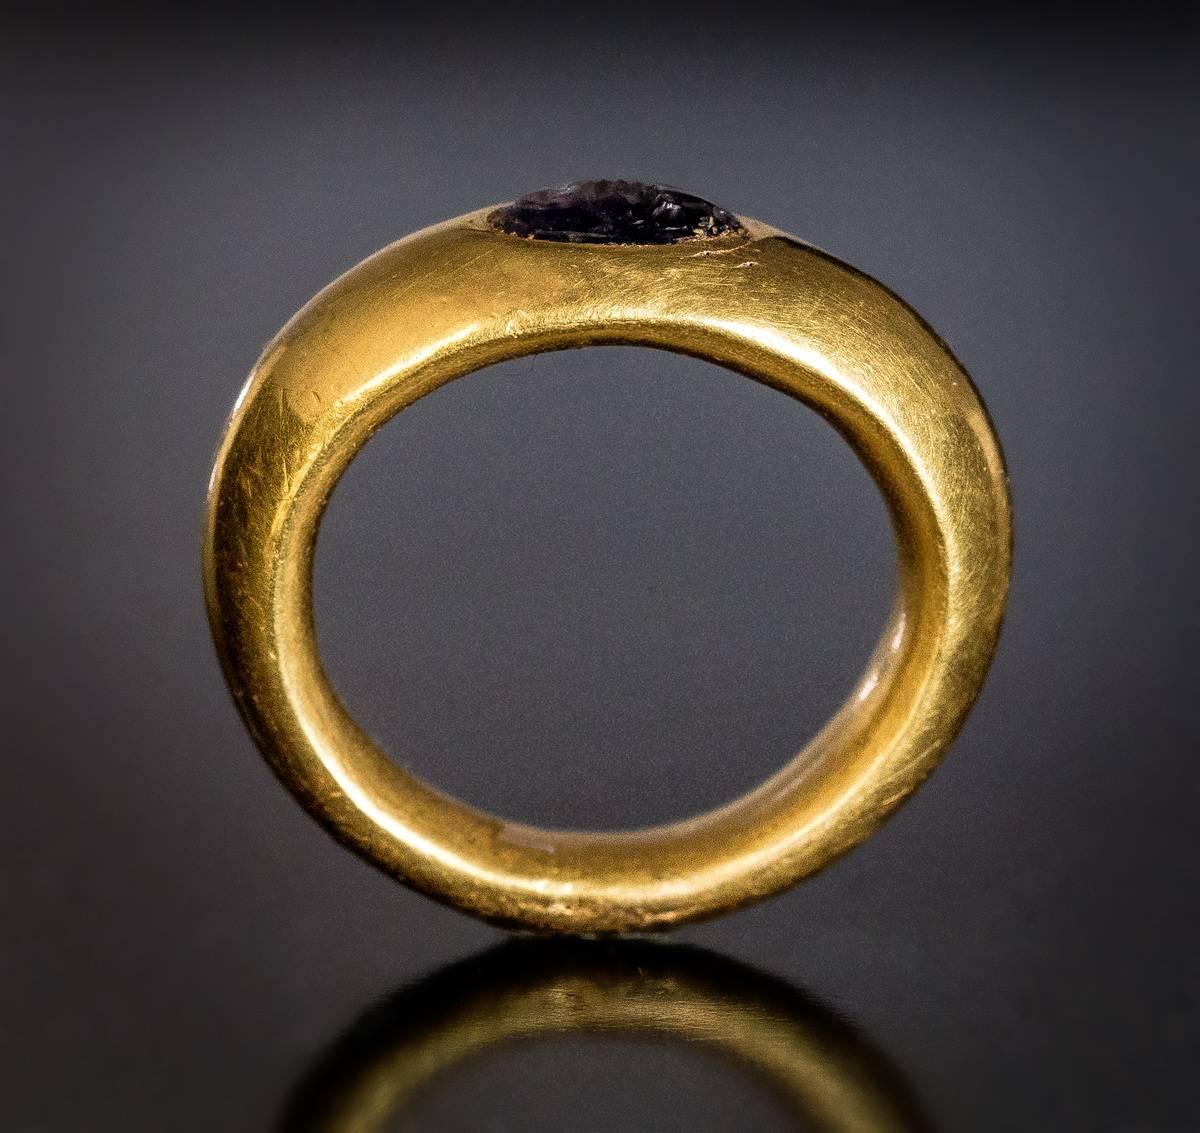 Romains, vers les 2e - 1er siècles avant J.-C.

Cette chevalière en or creux de qualité musée, finement modelée, d'un carat élevé (environ 22,5K), est sertie d'une intaille d'améthyste ovale.
L'intaille est gravée d'une louve, symbole de